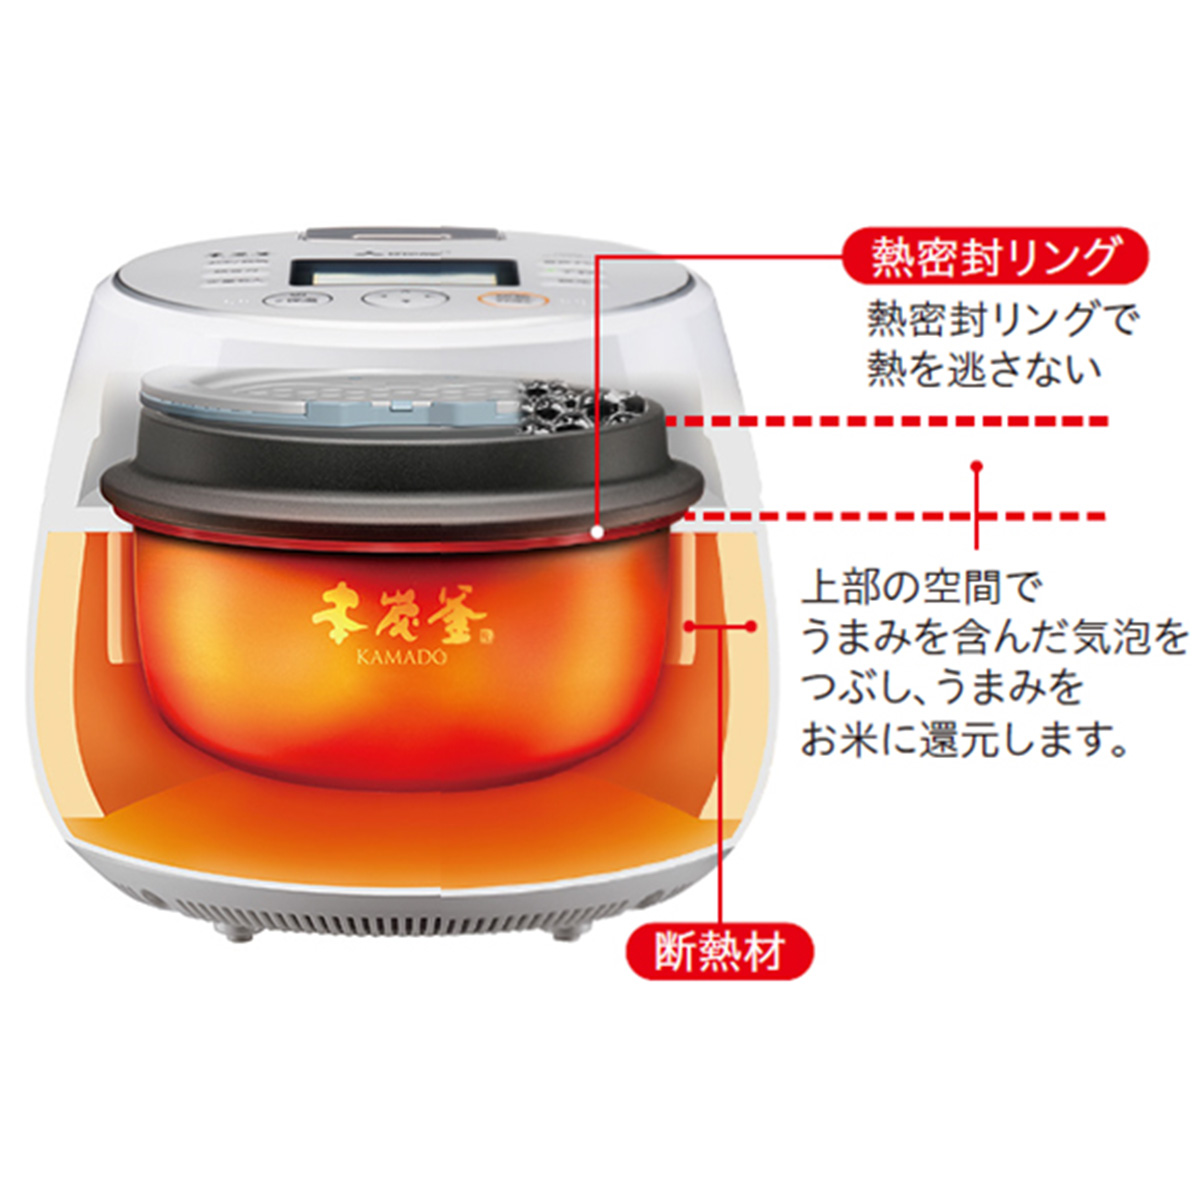 ひかりＴＶショッピング | [19年度 三菱最上位モデル]IH炊飯器 日本製